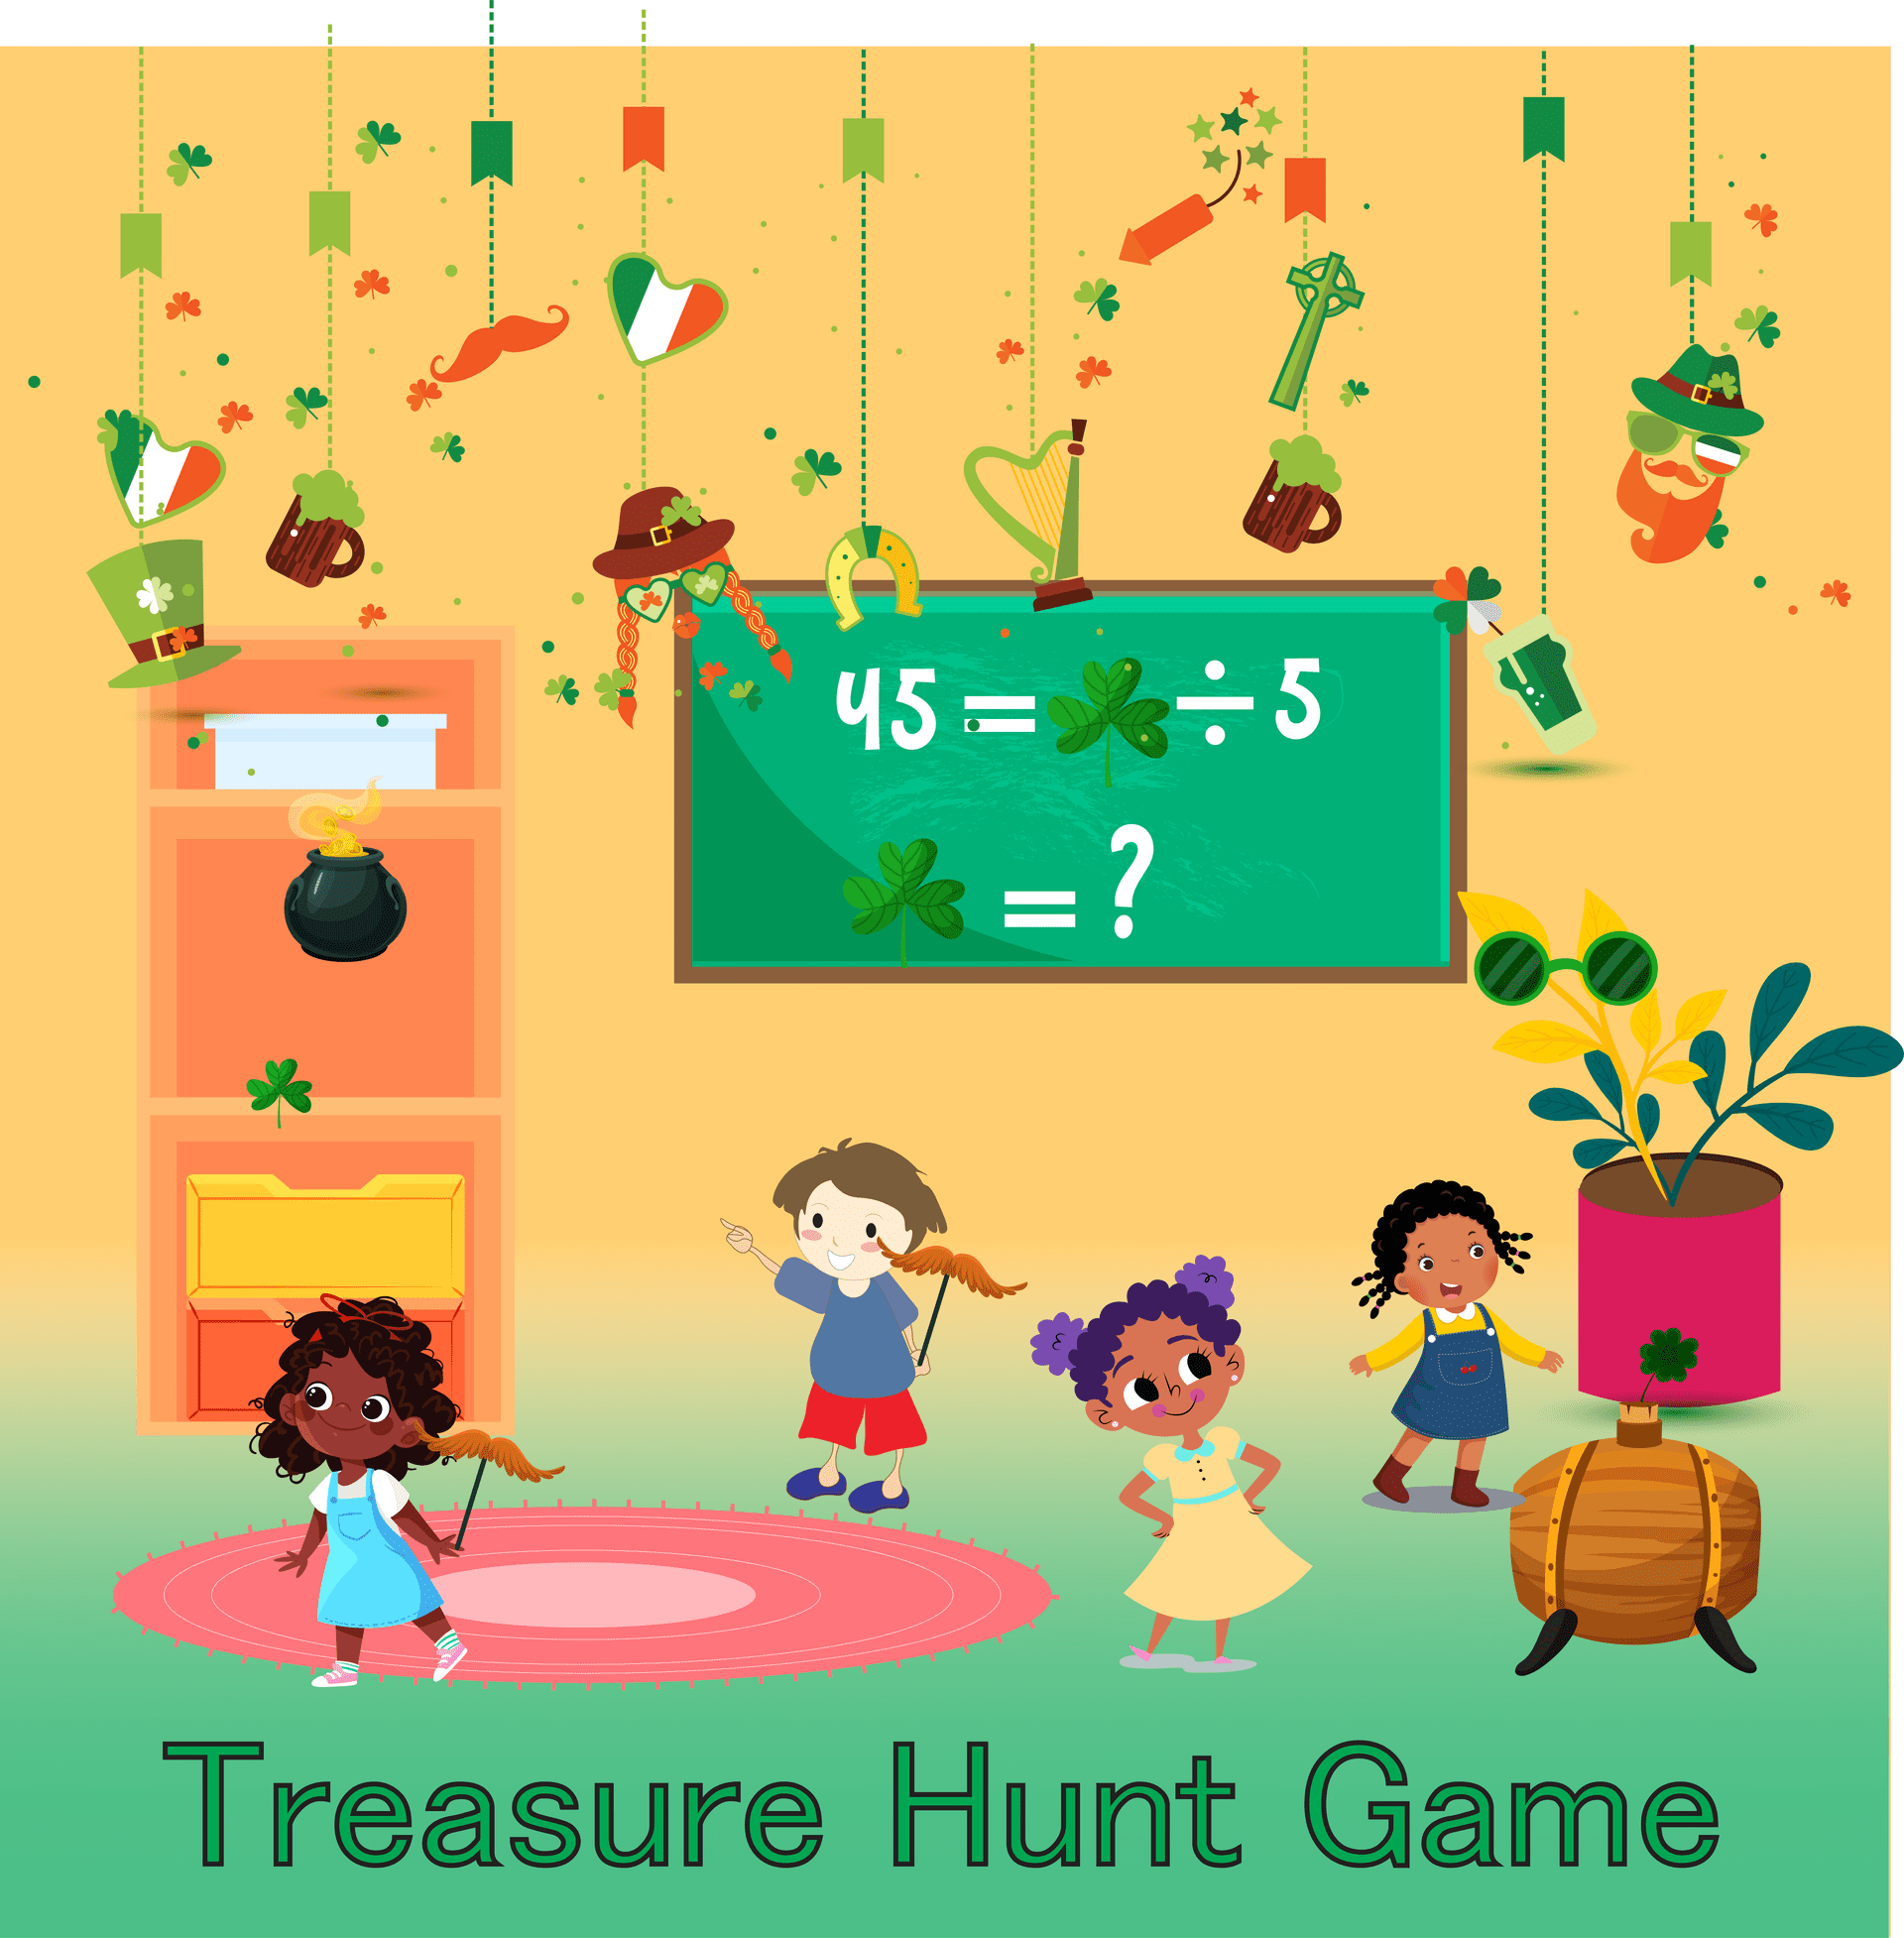 Treasure Hunt game in St Patrick's day 